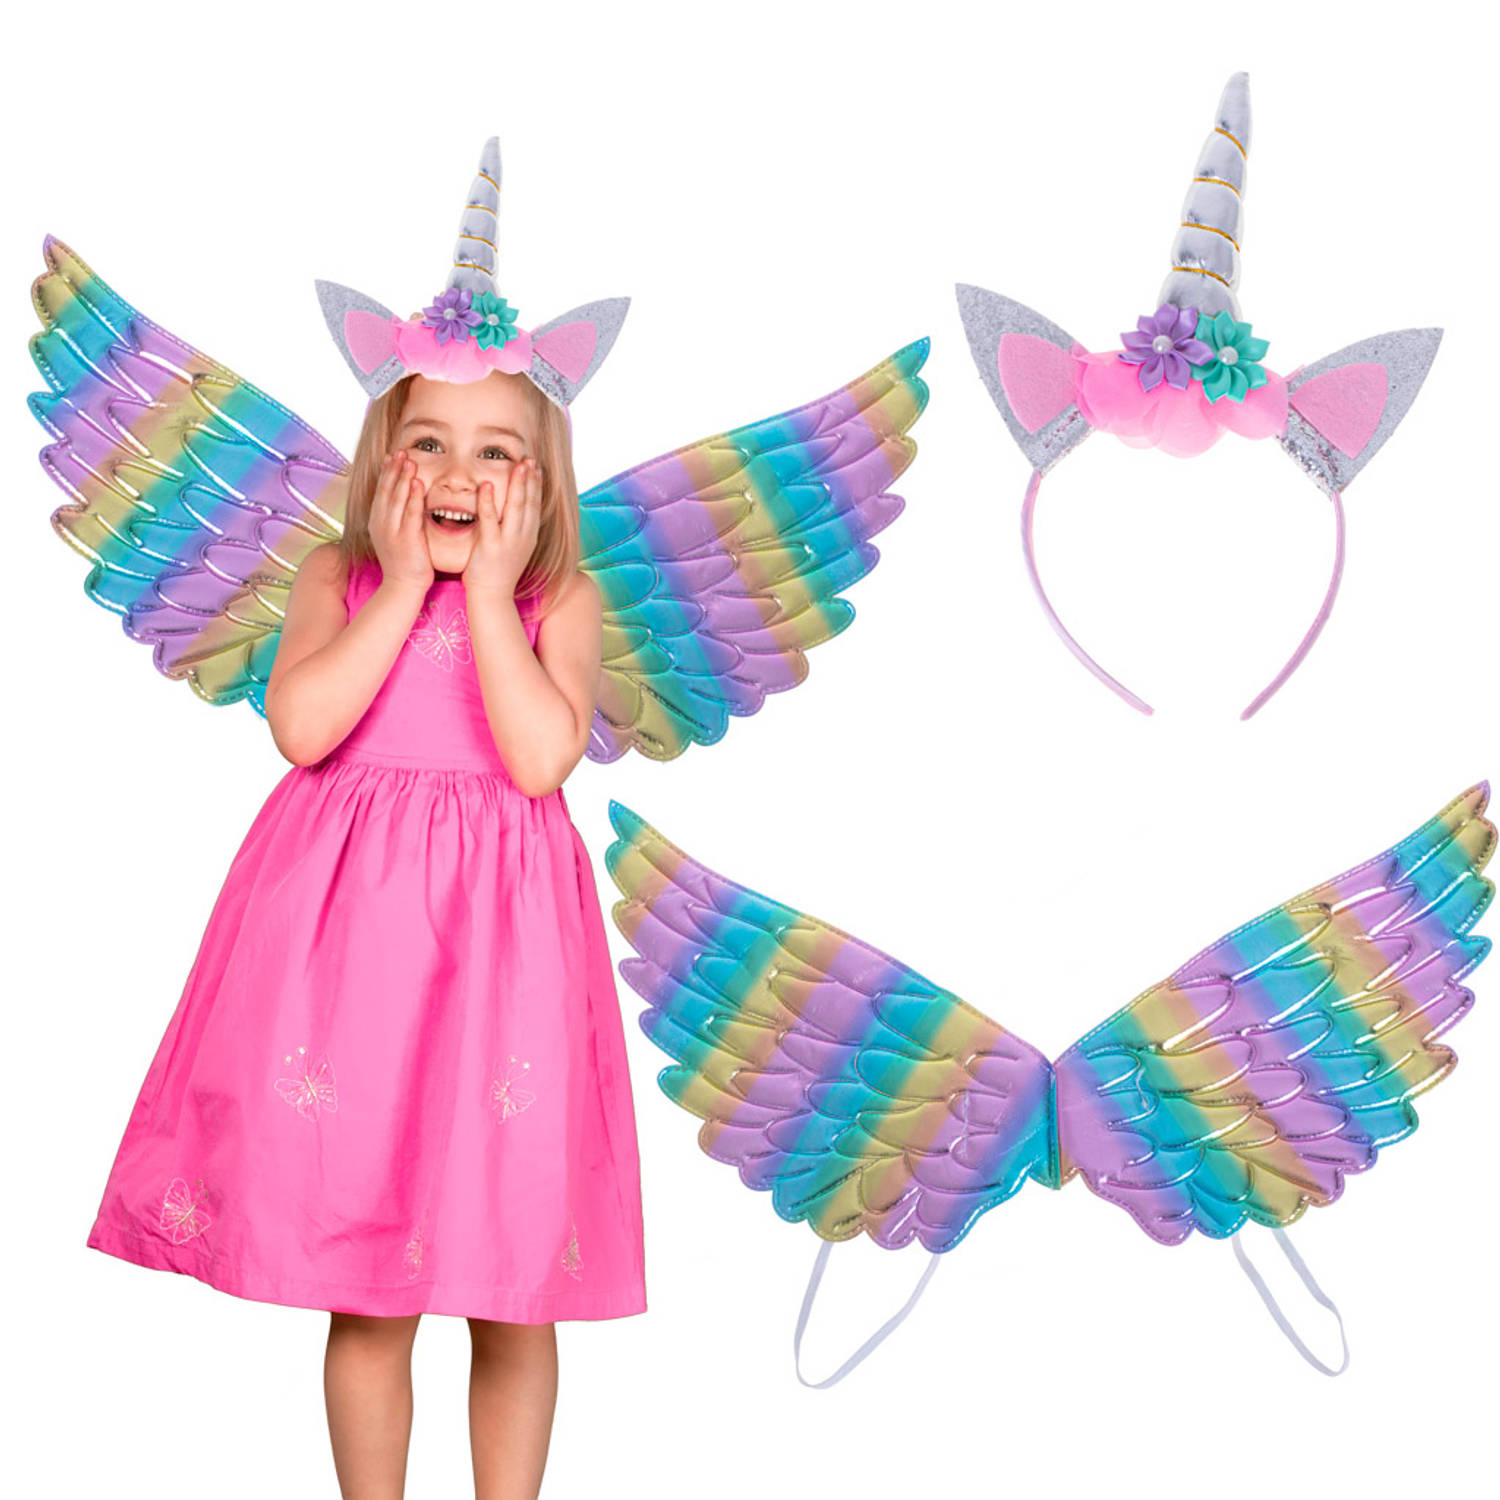 Kinder verkleedkleren / carnaval outfit unicorn met regenboog vleugels - Verkeedset voor kinderen